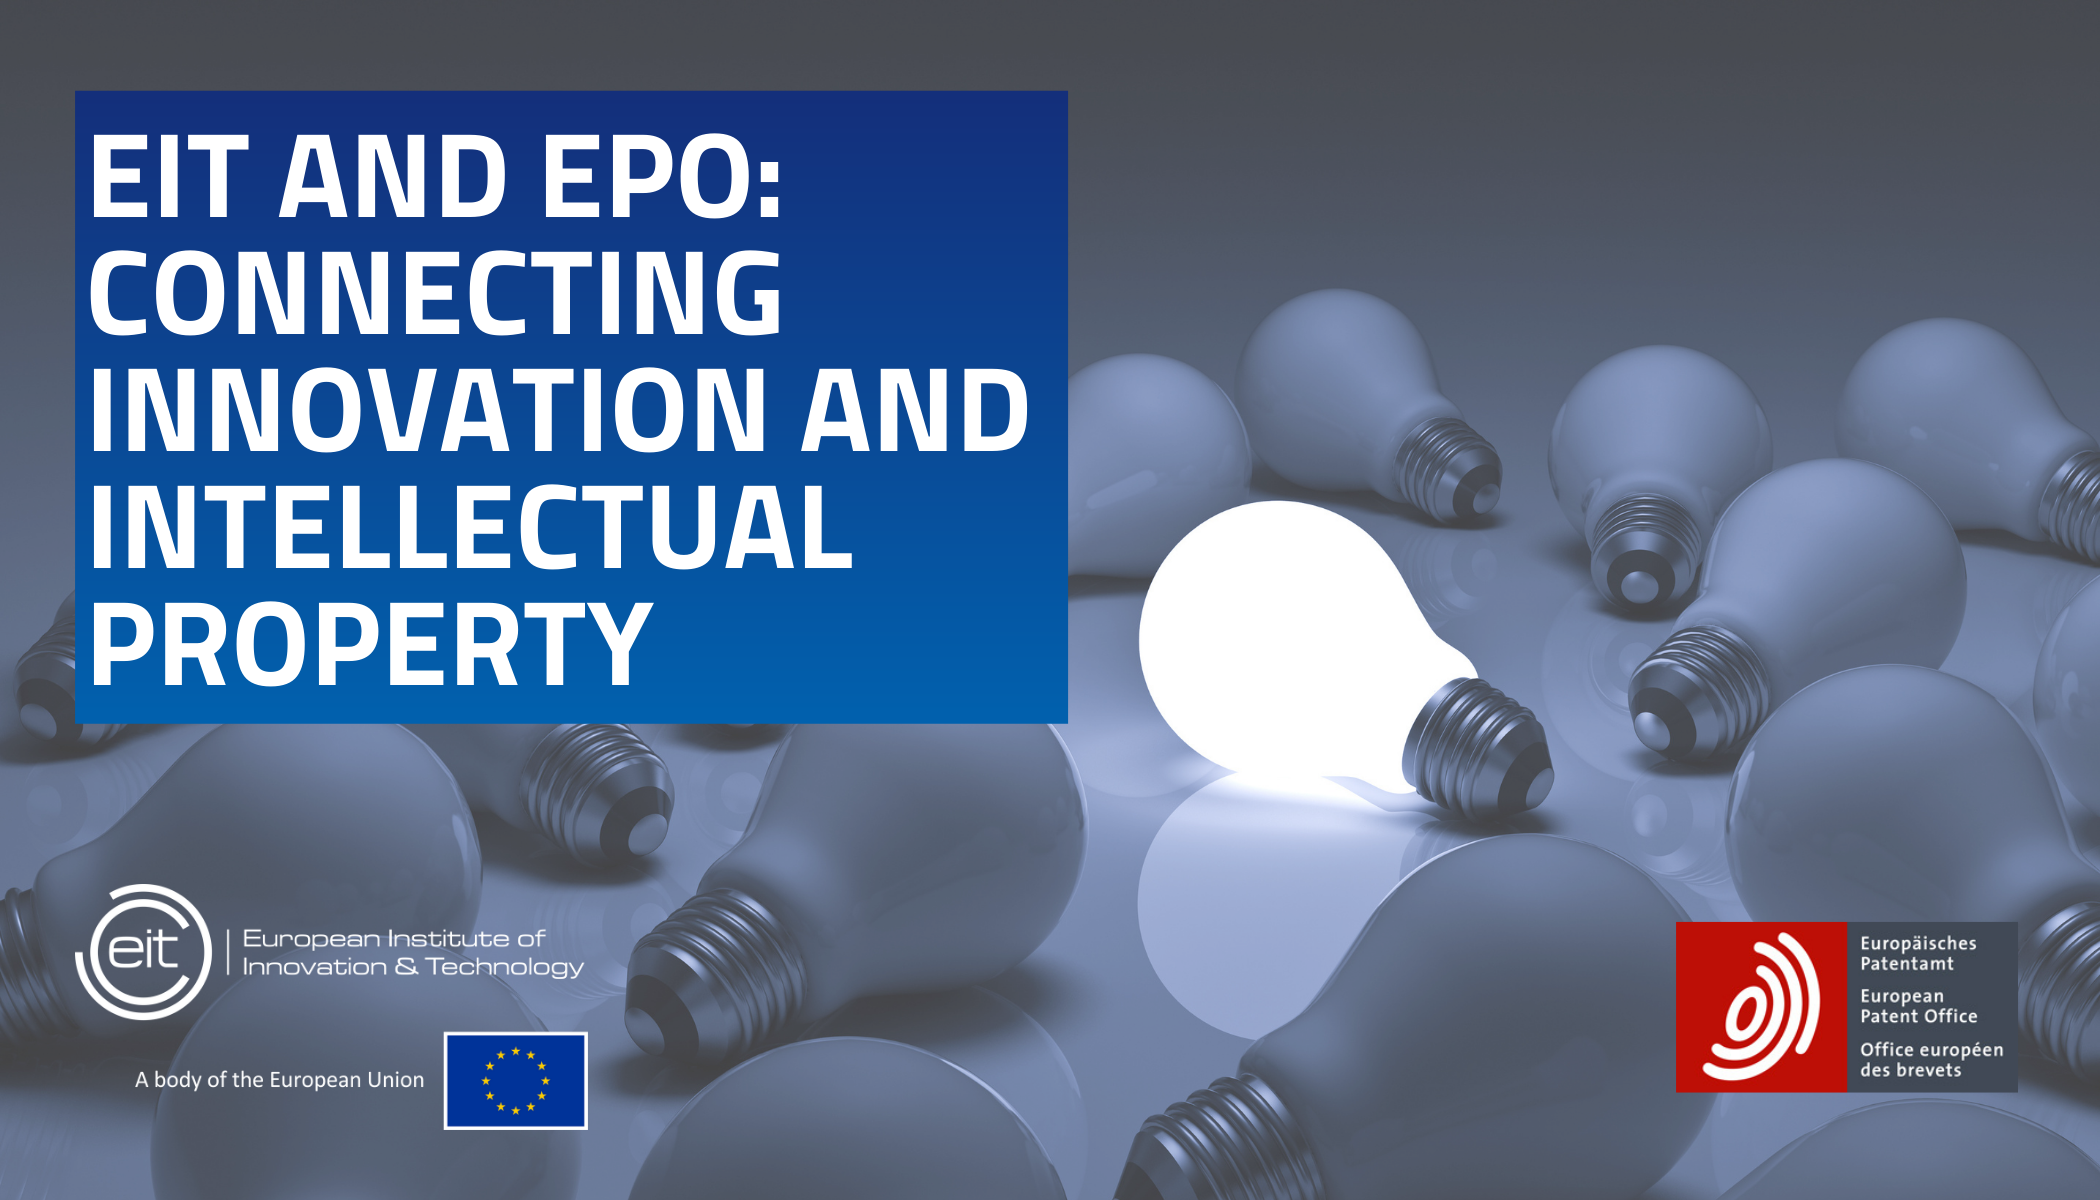 Συνεργασία του Ευρωπαϊκού Ινστιτούτου Καινοτομίας και Τεχνολογίας (ΕΙΤ) και του Ευρωπαϊκού Γραφείου Διπλωμάτων Ευρεσιτεχνίας (EPO)